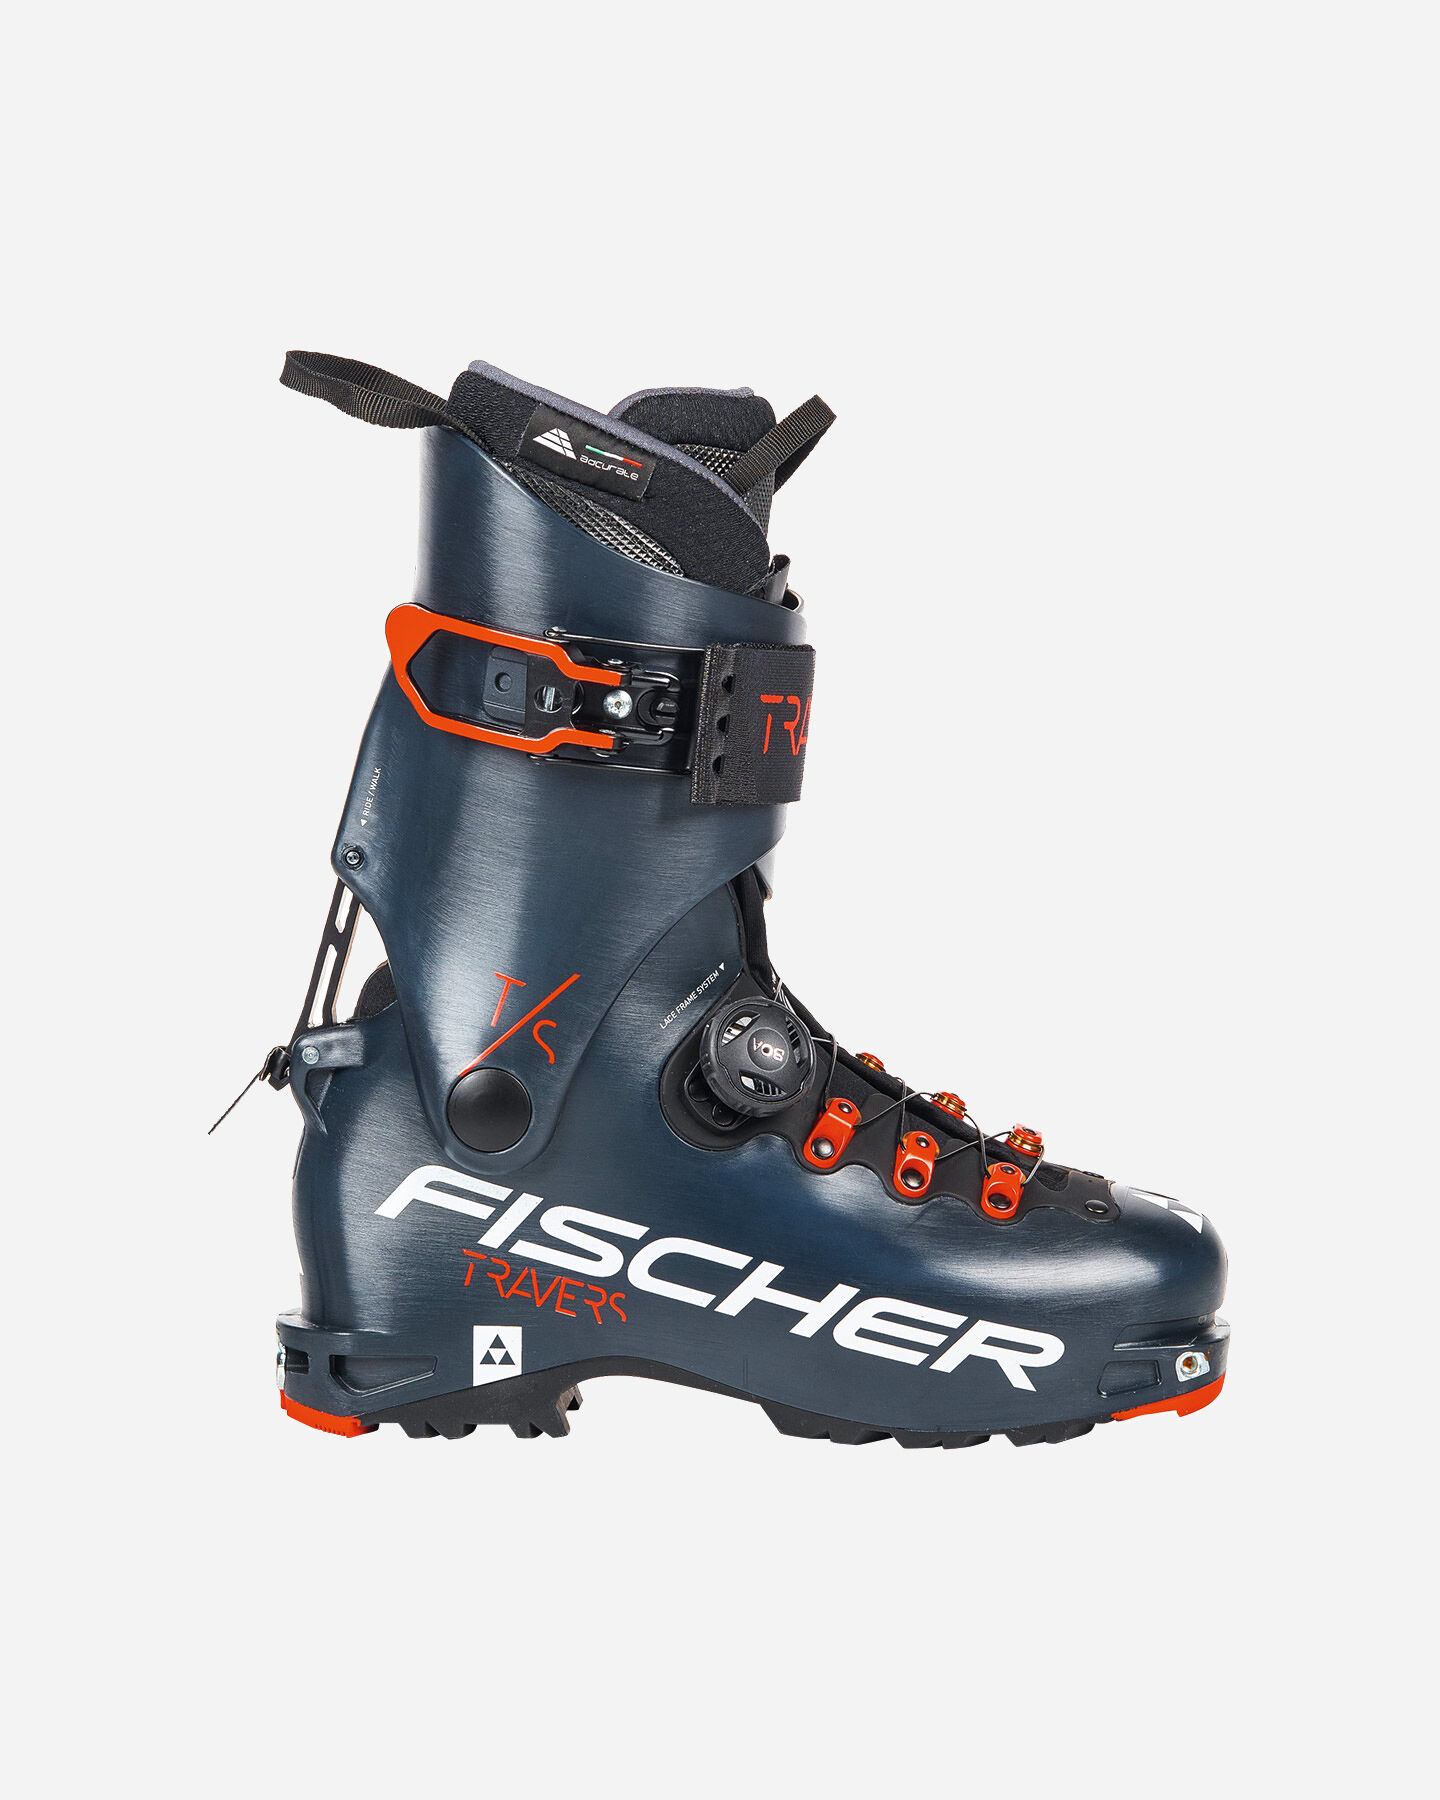  Scarponi sci alpinismo FISCHER TRAVERS TS S4092535|1|24,5 scatto 0